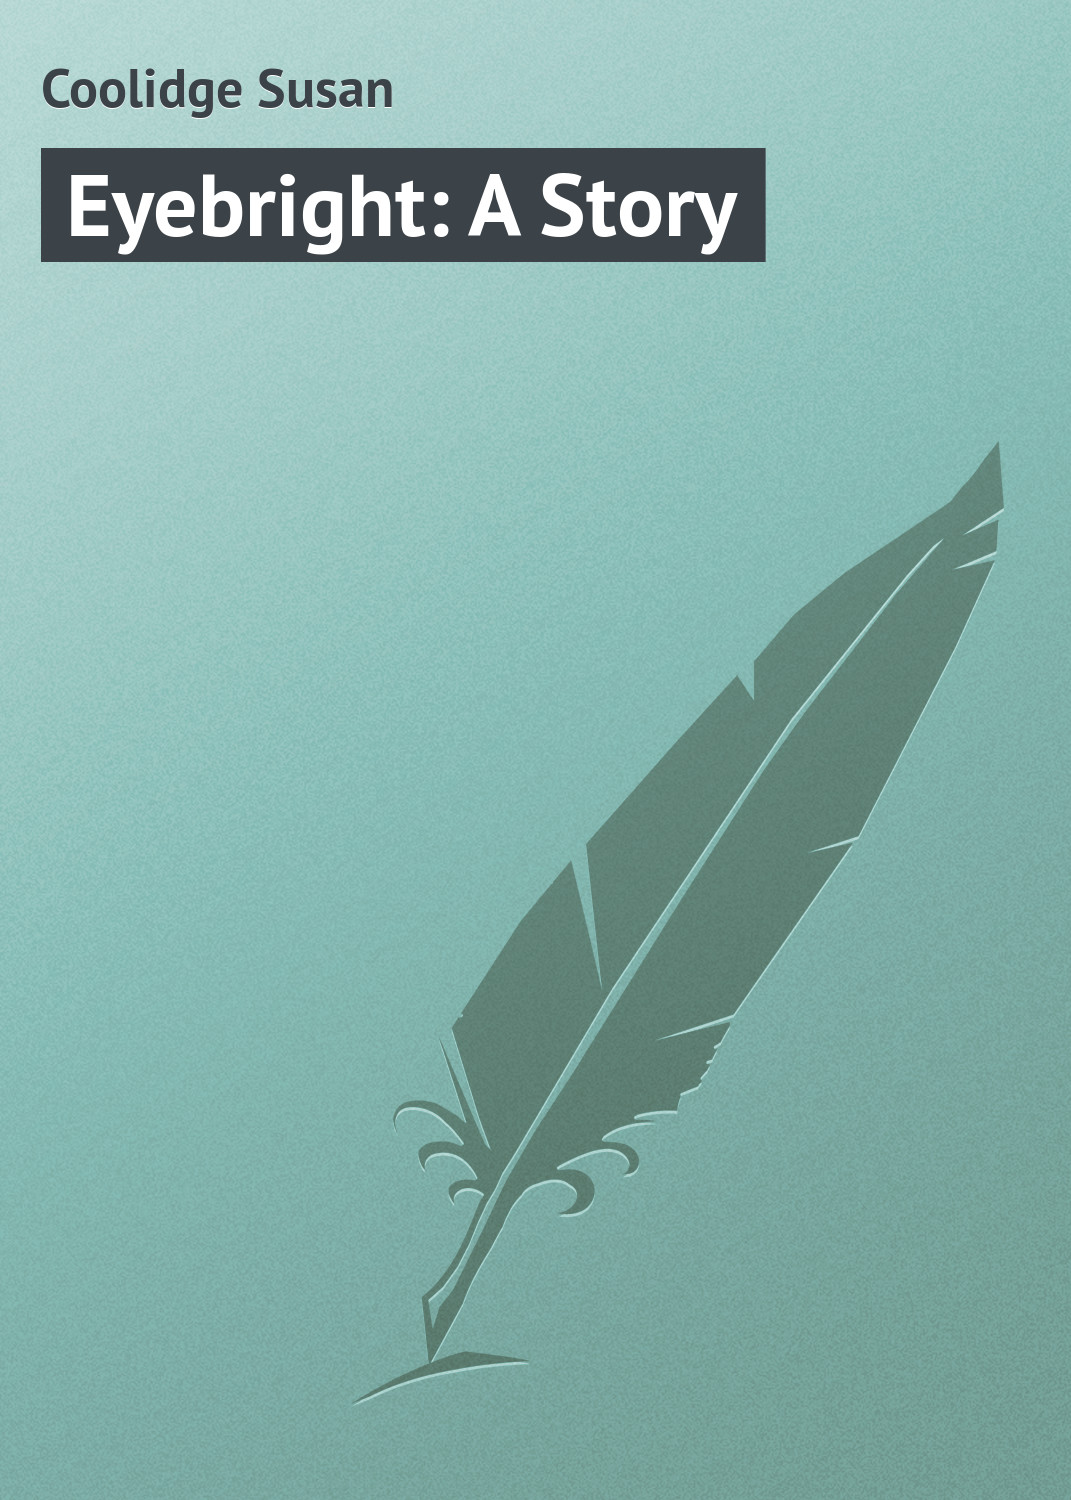 Книга Eyebright: A Story из серии , созданная Susan Coolidge, может относится к жанру Иностранные языки, Зарубежная классика, Зарубежные детские книги. Стоимость электронной книги Eyebright: A Story с идентификатором 23157643 составляет 5.99 руб.